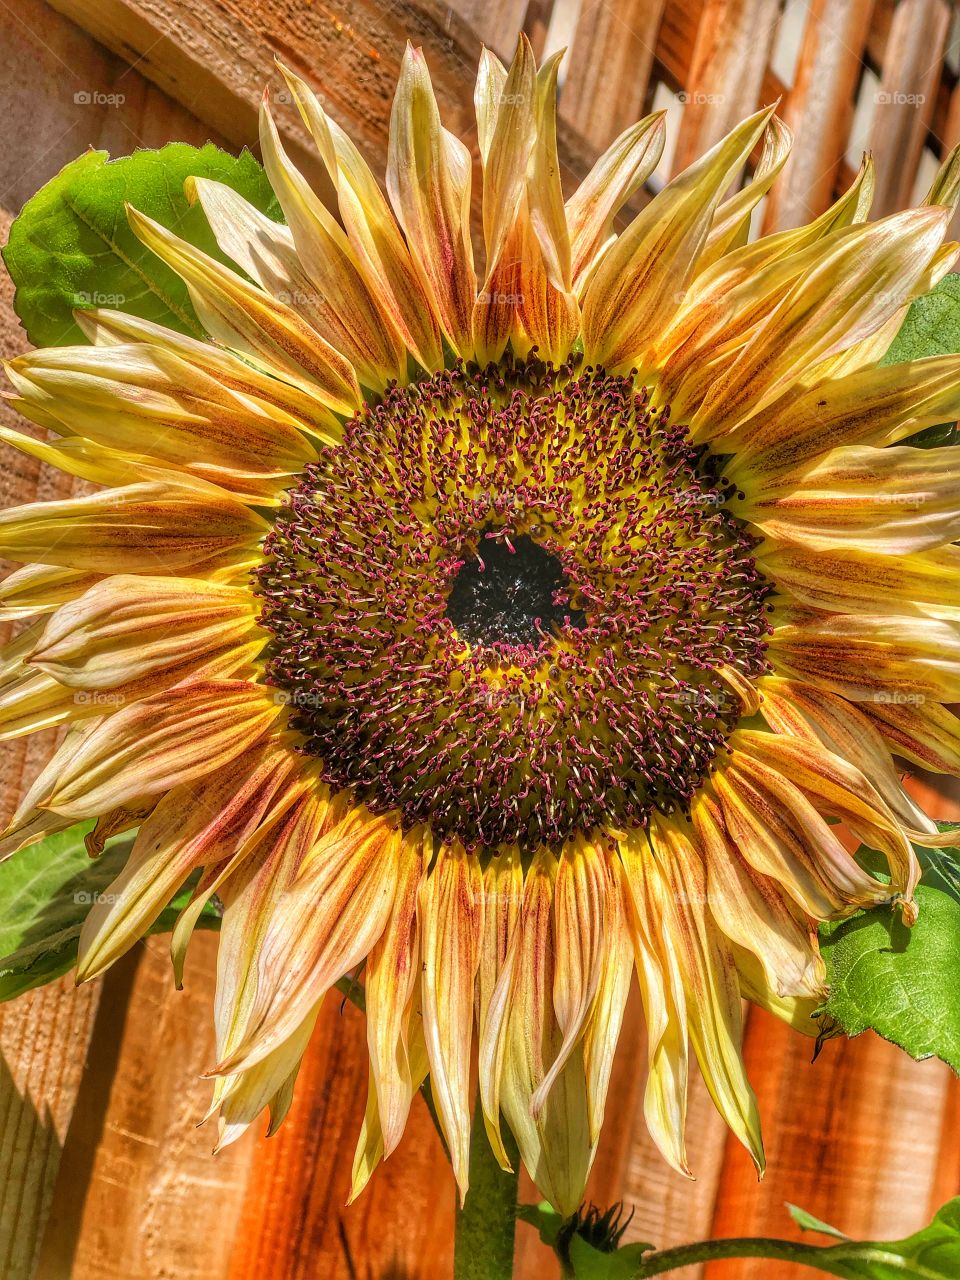 A beautiful sunflower basking in the sun.